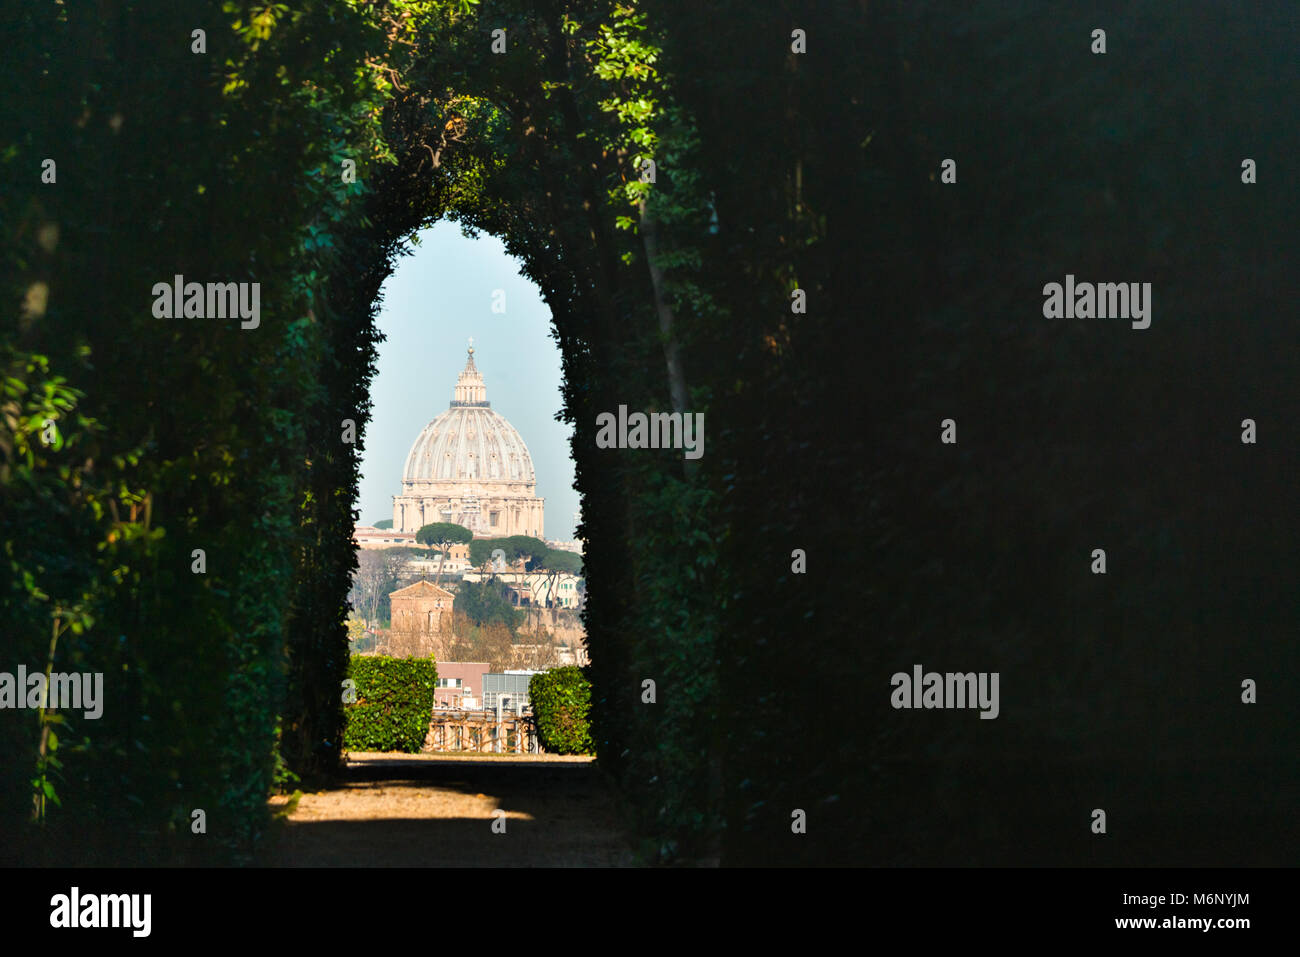 Der Aventin Schlüsselloch. Blick auf St. Peter's Cathedral durch Schlüsselloch der Tür des Priorat der Ritter von Malta, Aventin, Rom, Italien gesehen. Stockfoto